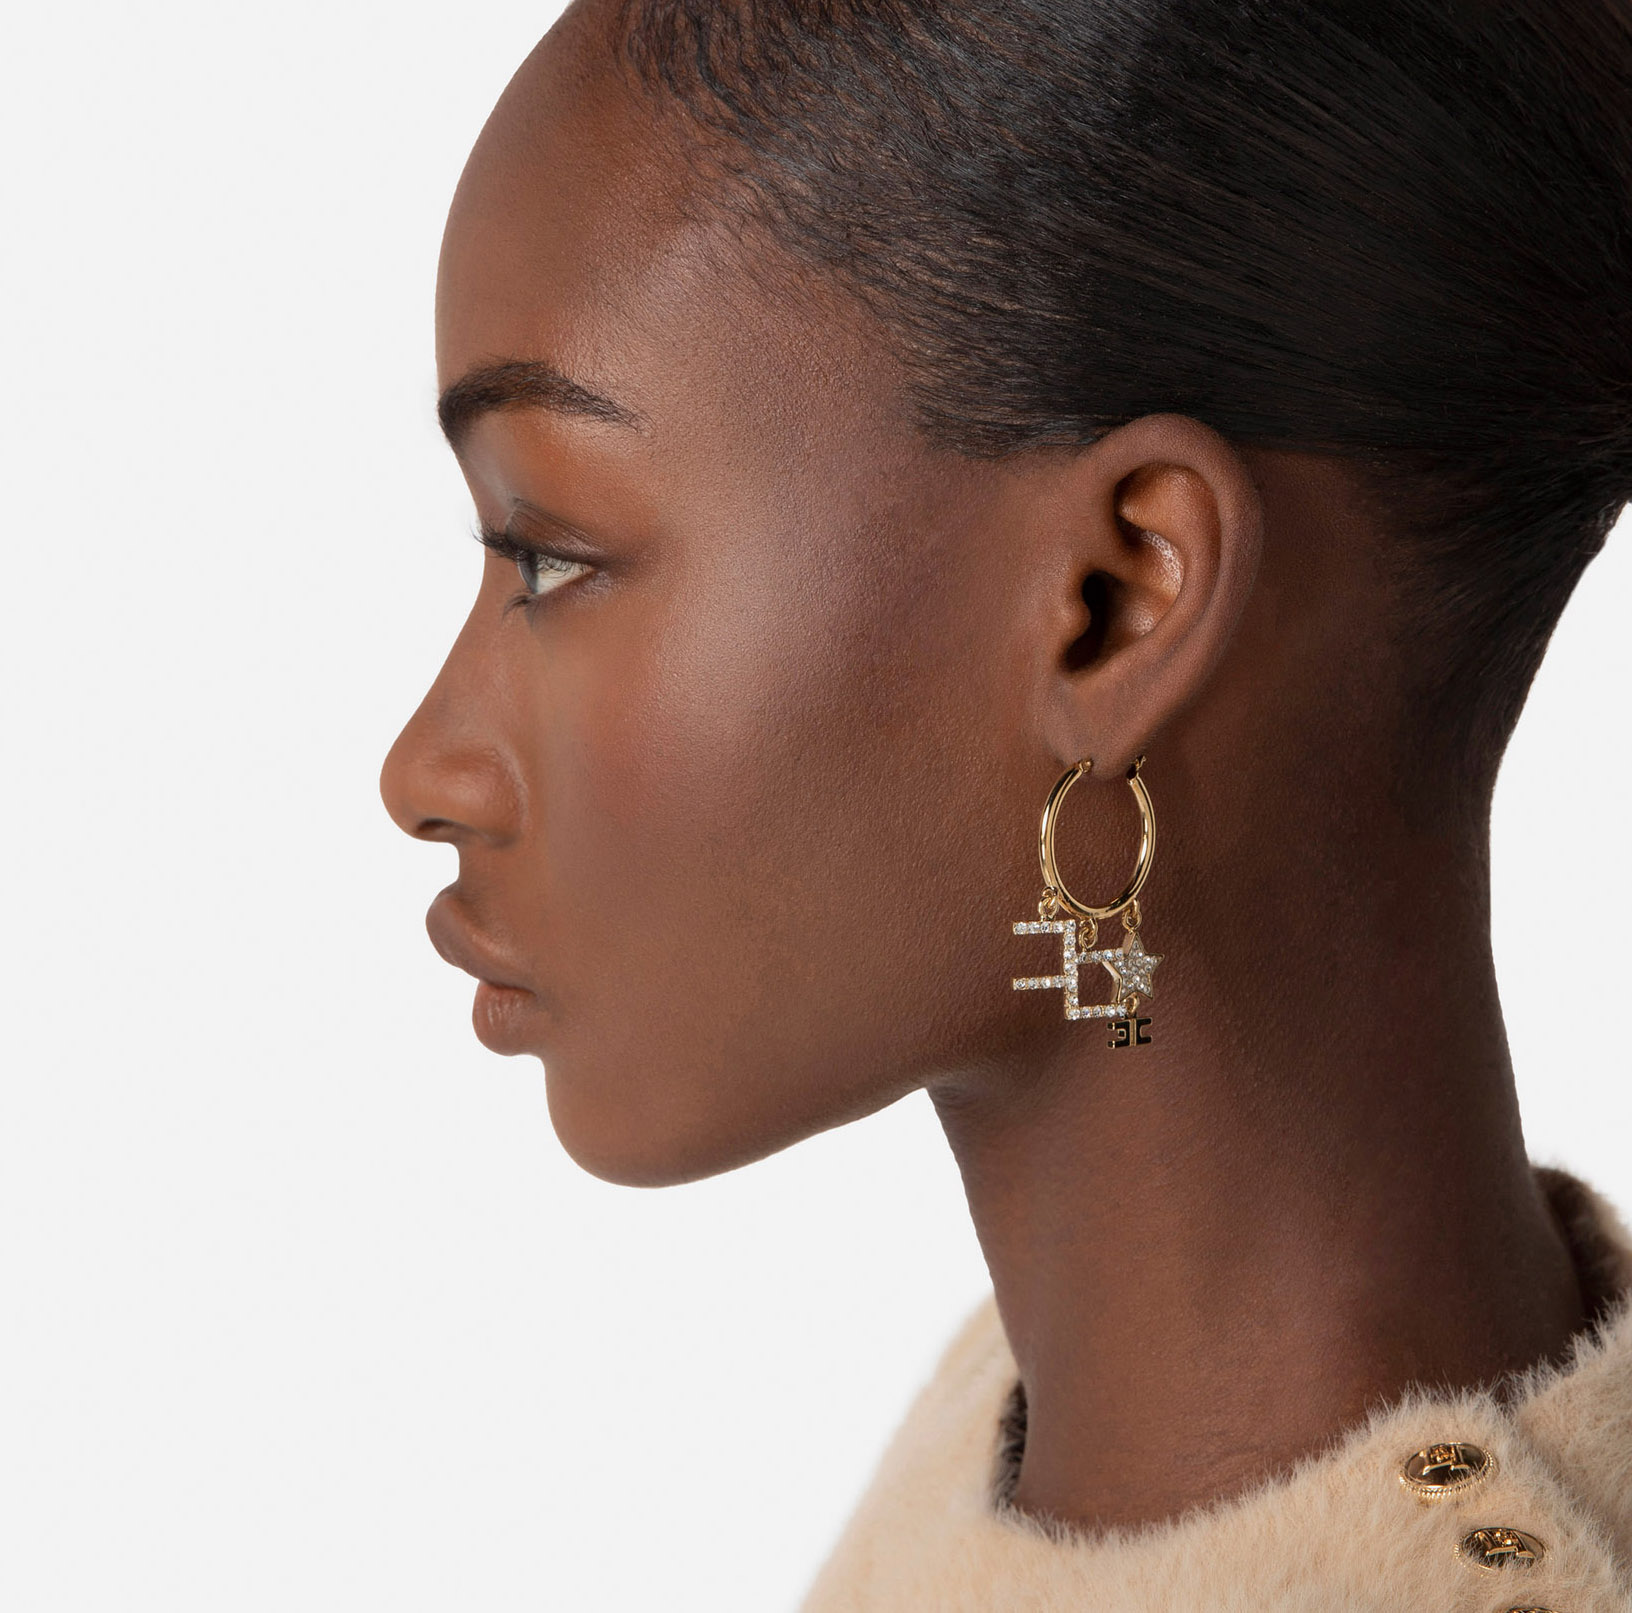 BOLD Monogram Hoop Earrings Gift for Her Gold Hoop Earrings 